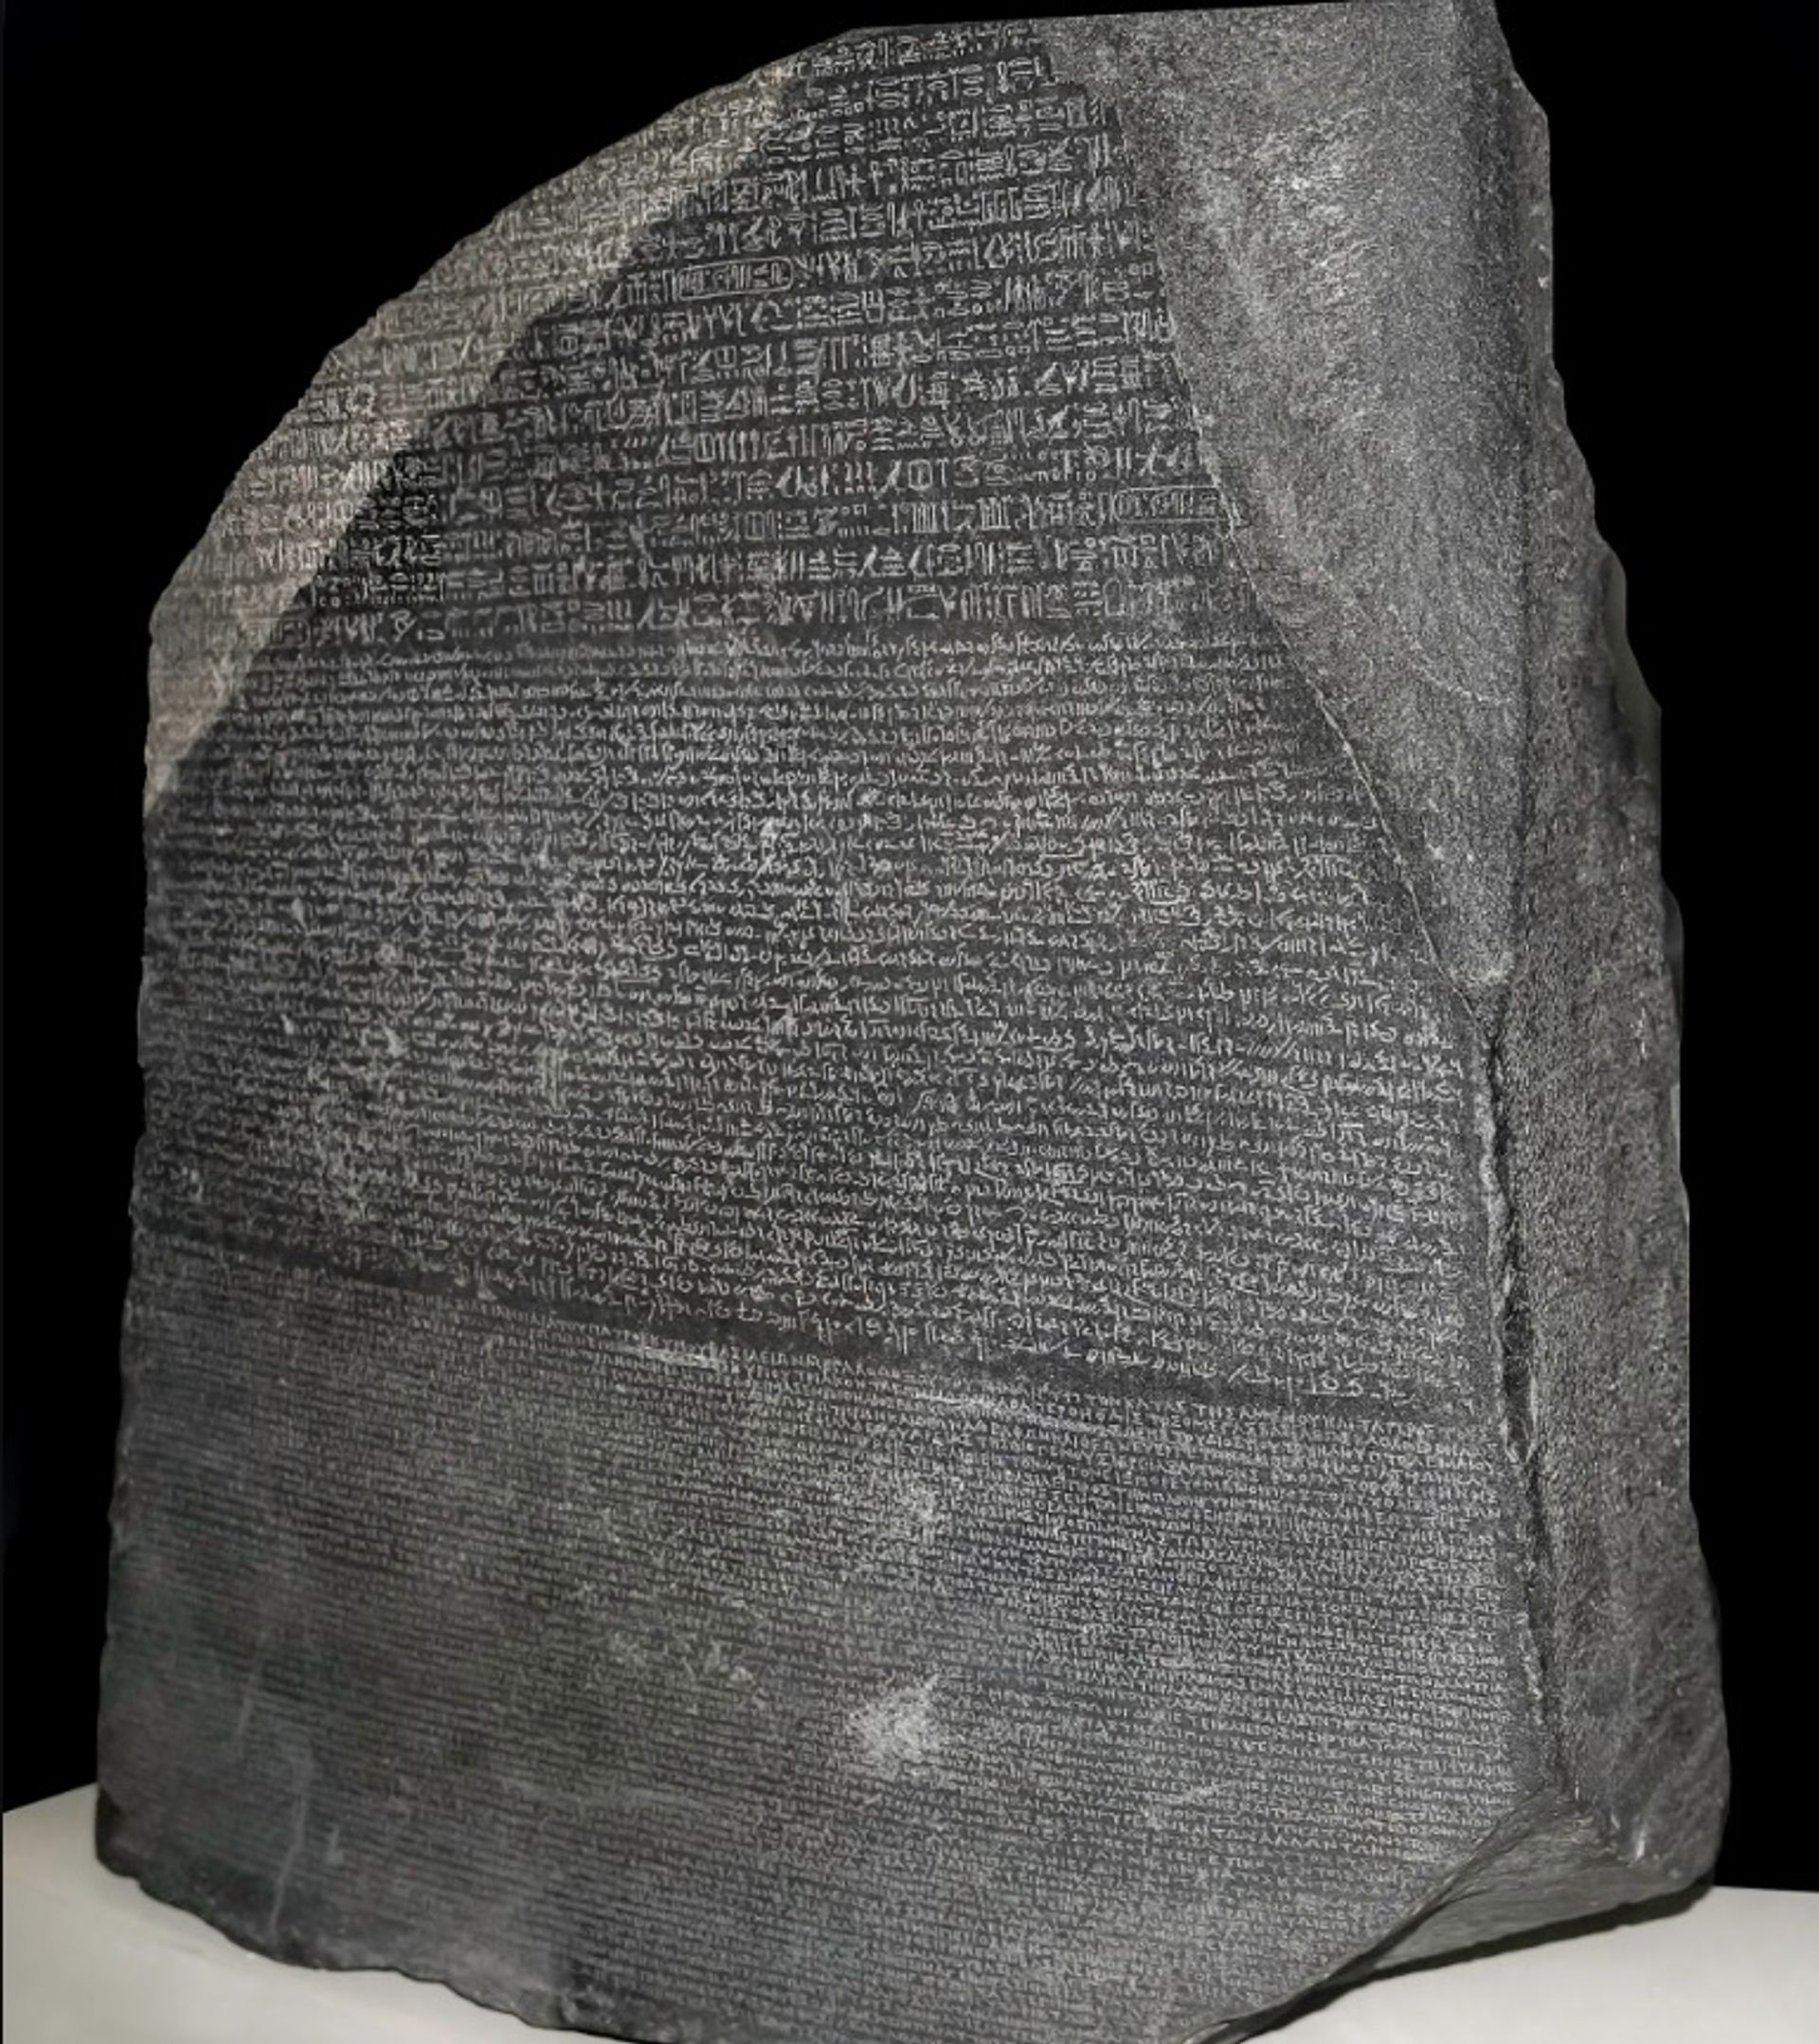 "המרד הגדול" במצרים, שאירע בשנים 207 עד 184 לפני הספירה, מפורט על אבן הרוזטה

צילום: Awikimate